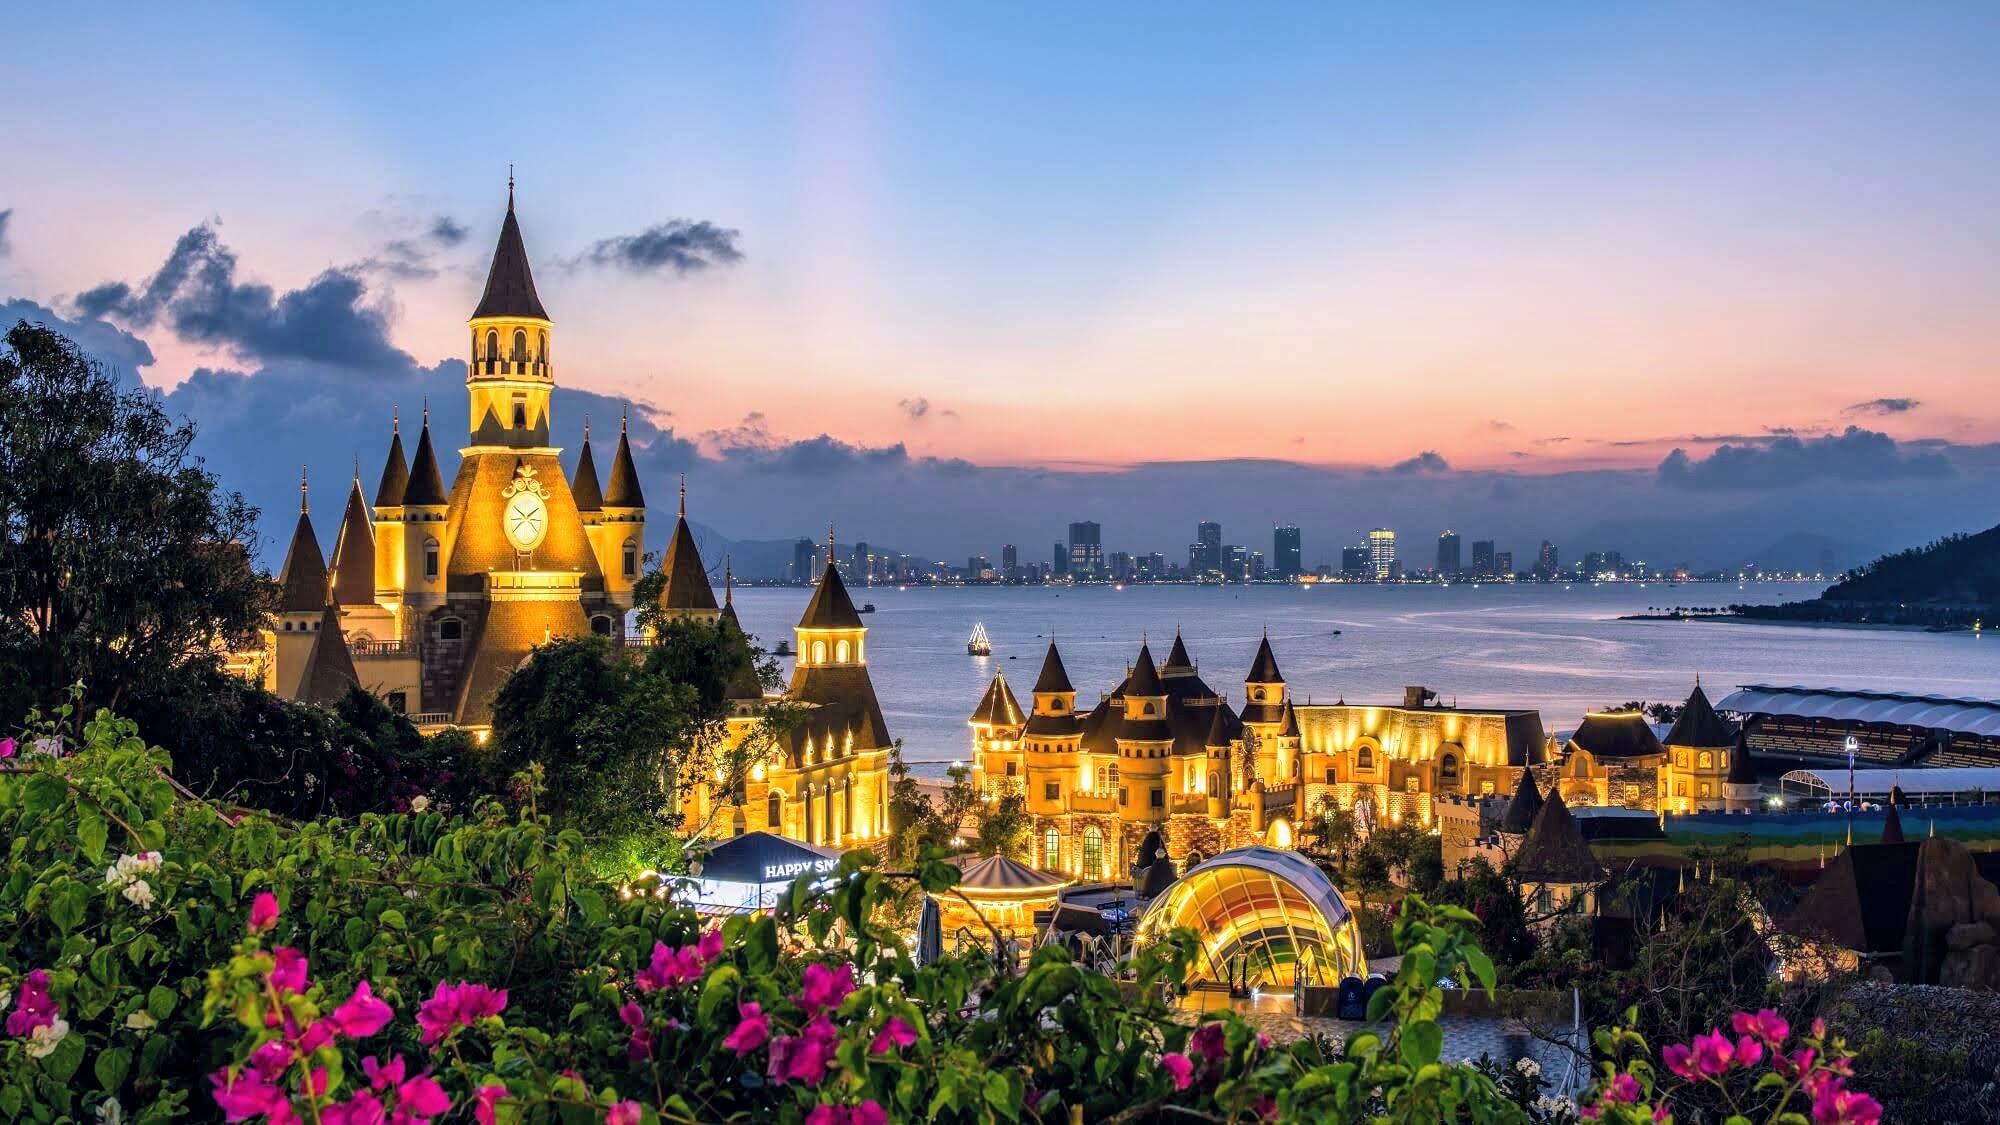 Tour du lịch Nha Trang 4 ngày 3 đêm 2022/2023 202259